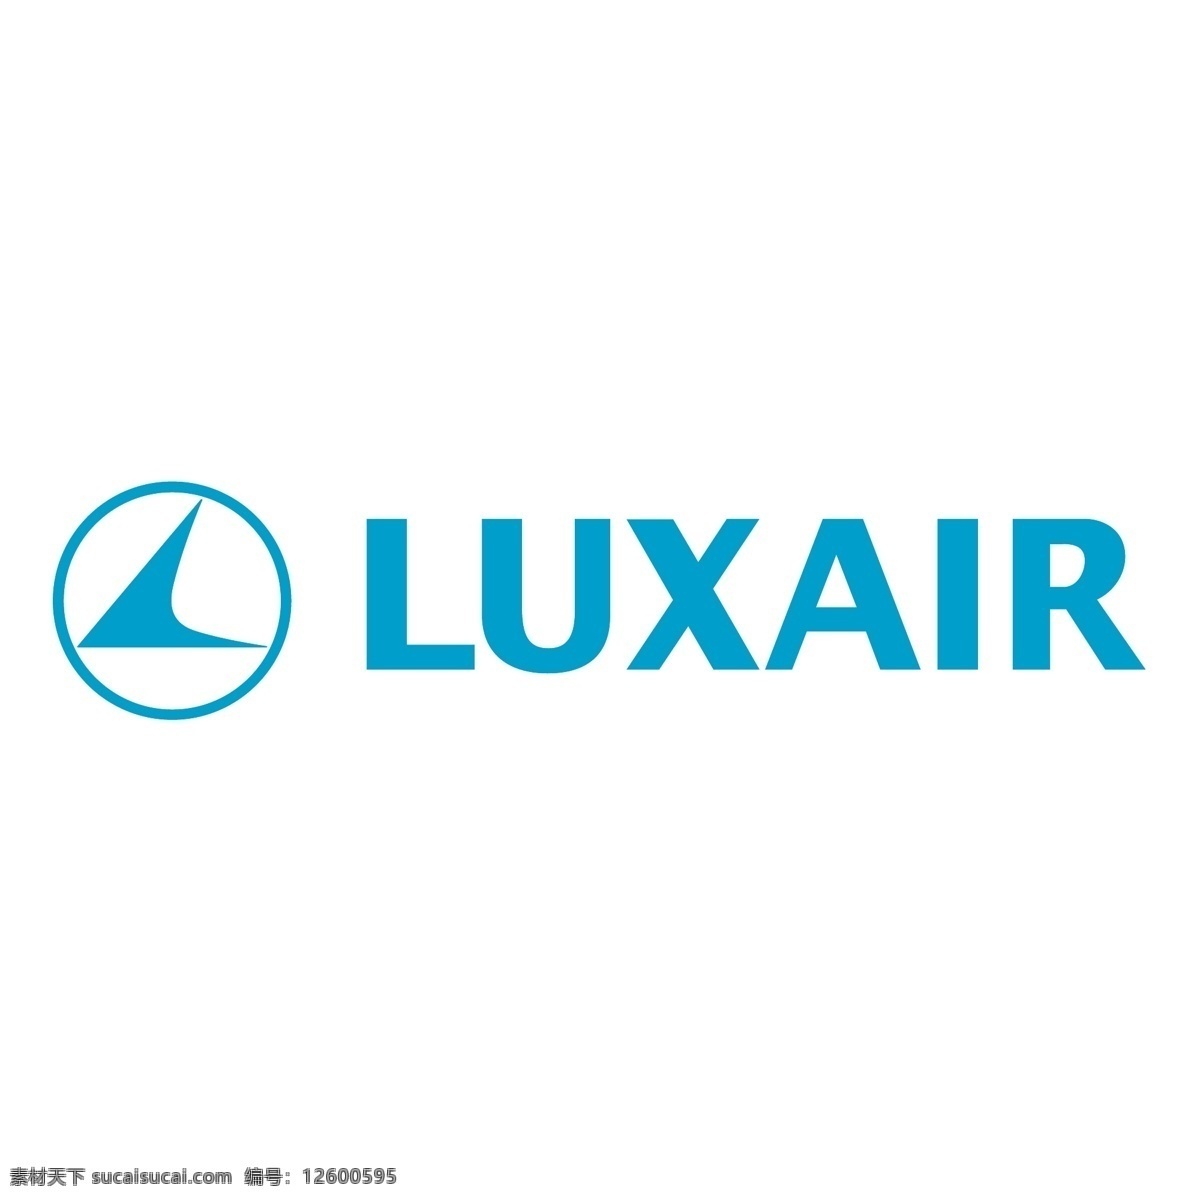 卢森堡 航空 免费 标志 标识 psd源文件 logo设计